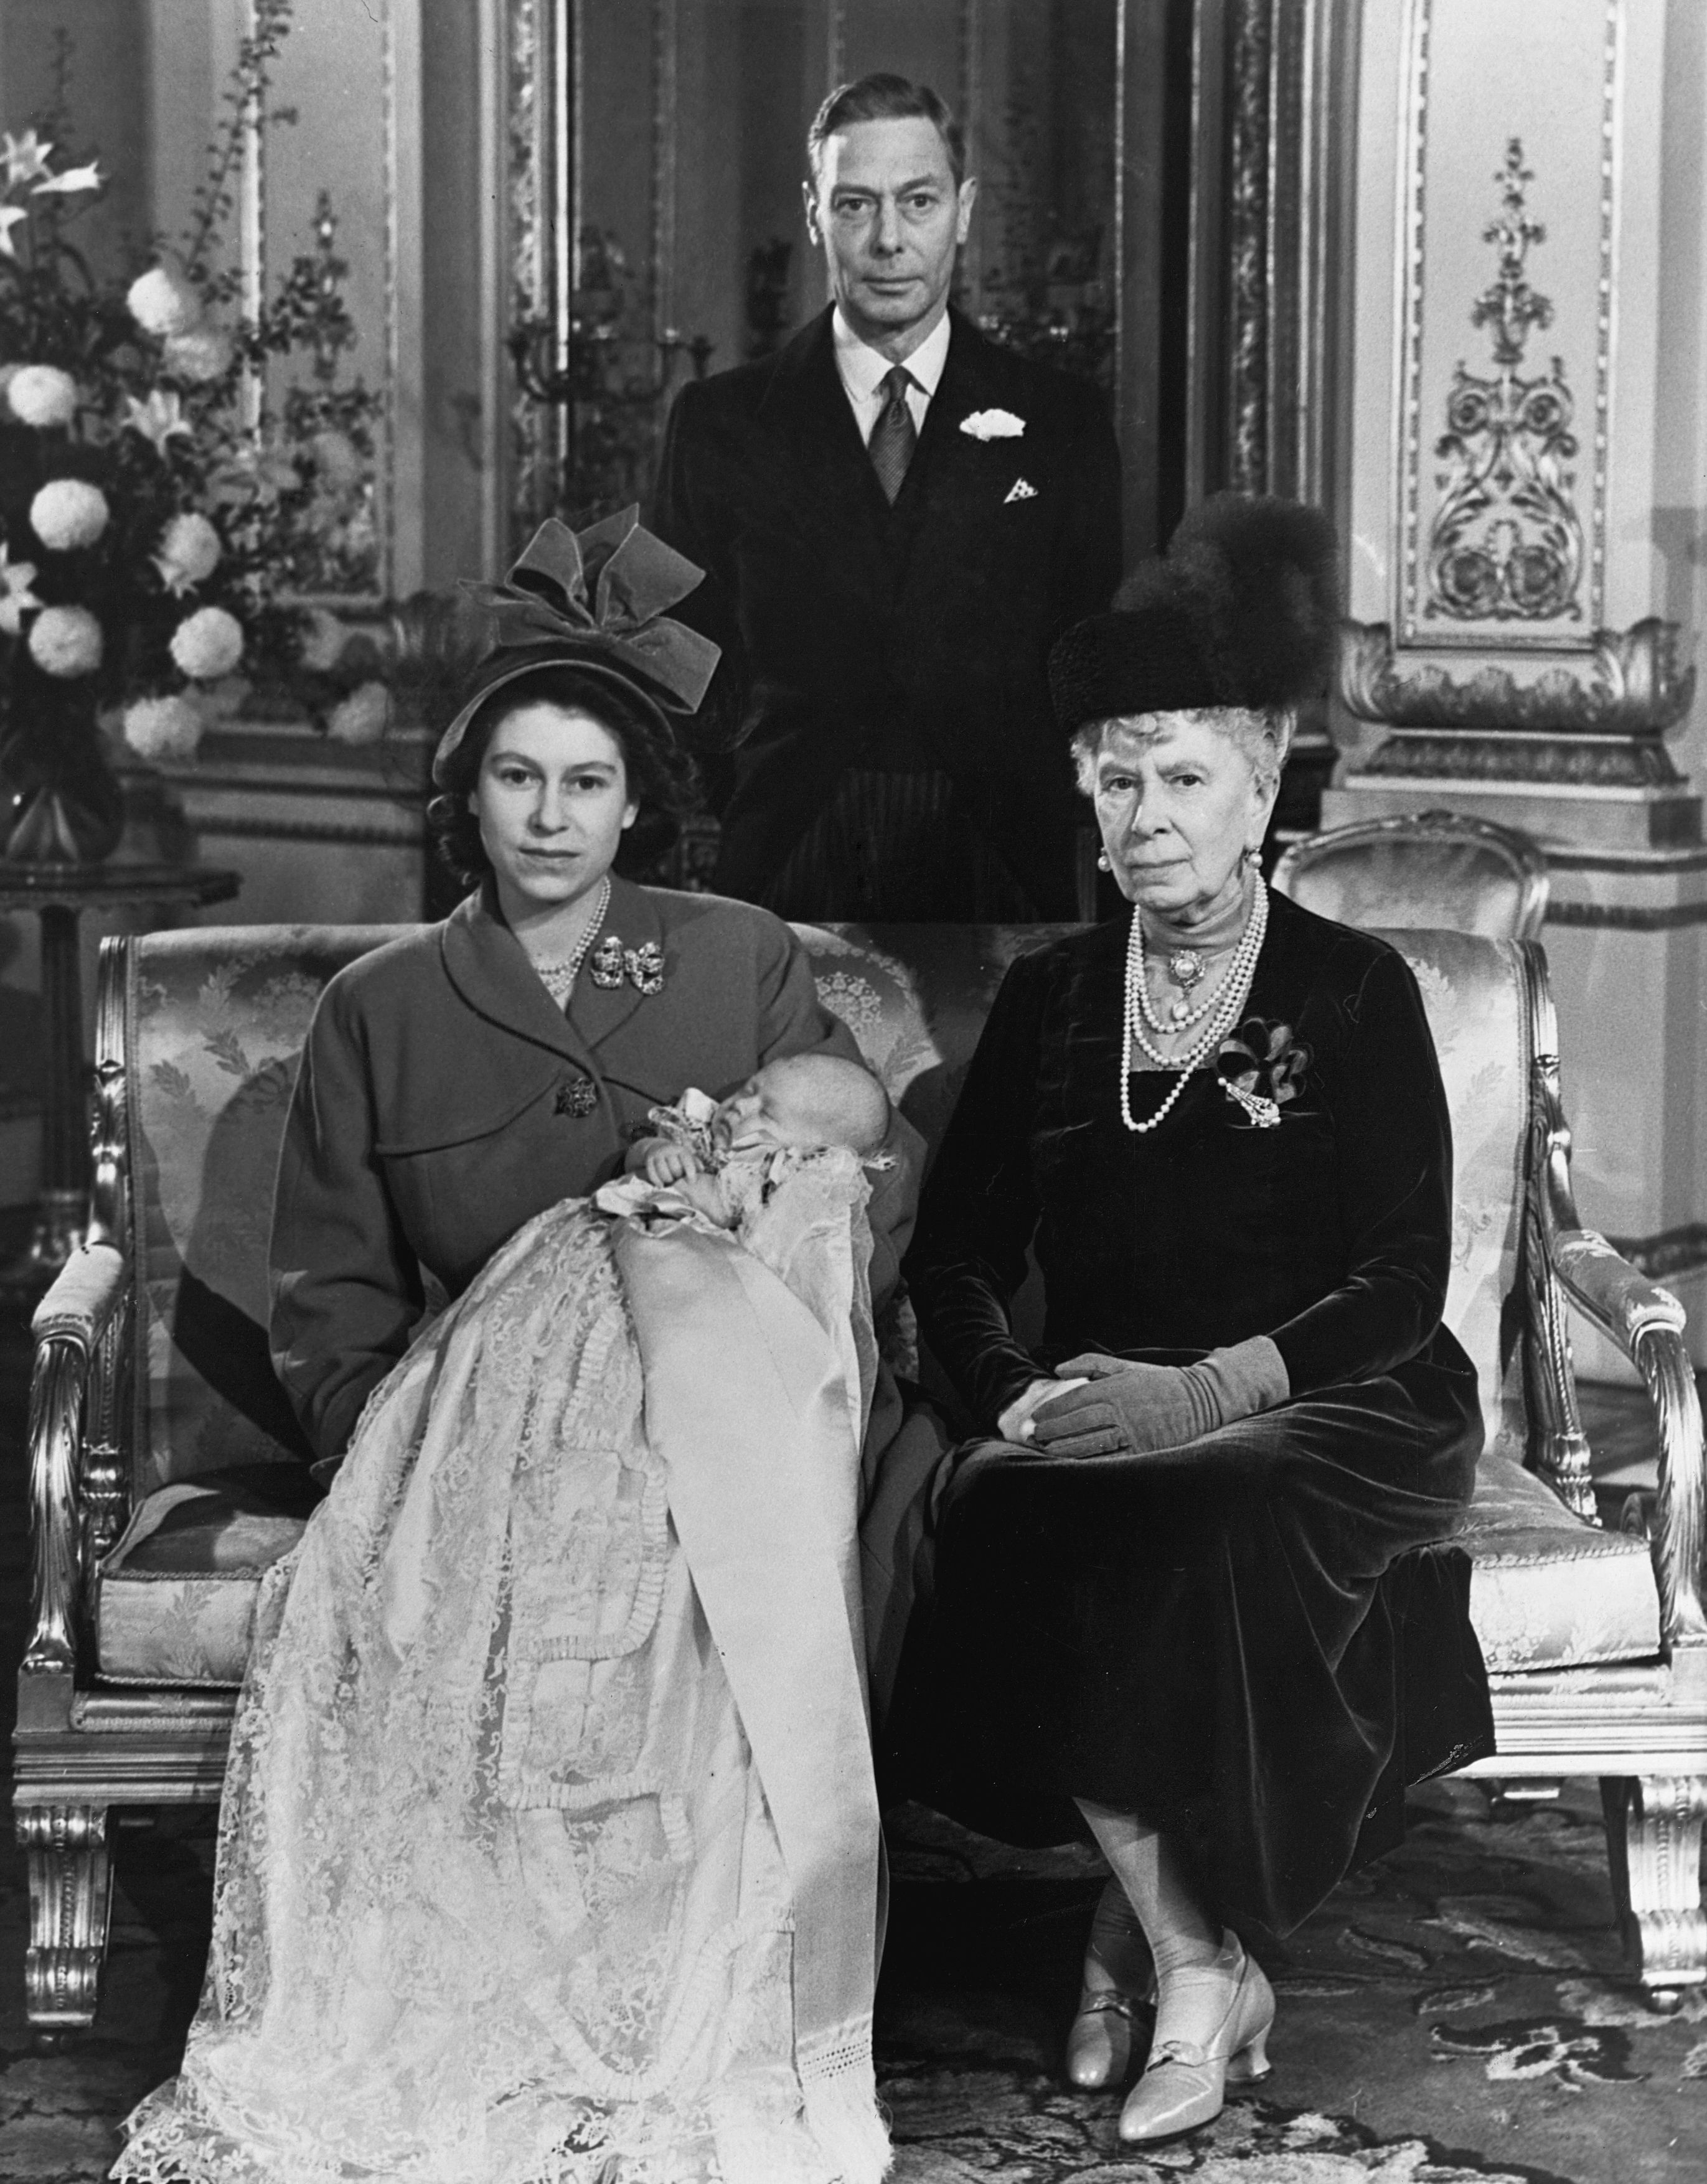 Historical Family Portrait, 4 People Victorian Portrait